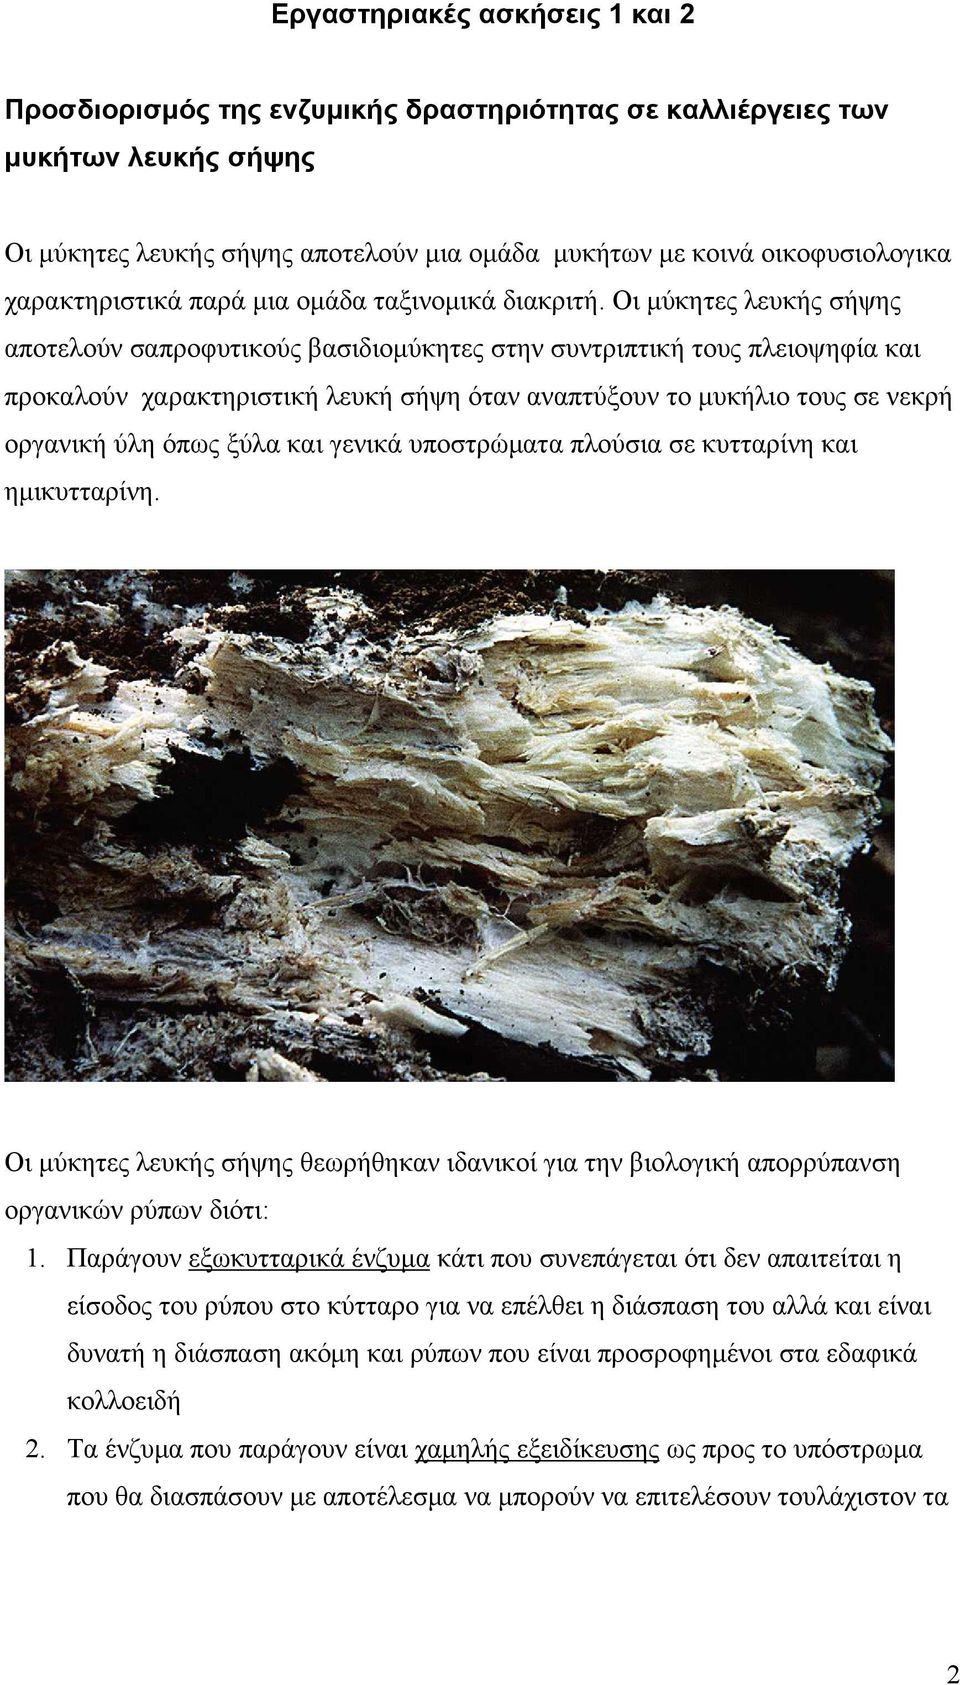 Οι μύκητες λευκής σήψης αποτελούν σαπροφυτικούς βασιδιομύκητες στην συντριπτική τους πλειοψηφία και προκαλούν χαρακτηριστική λευκή σήψη όταν αναπτύξουν το μυκήλιο τους σε νεκρή οργανική ύλη όπως ξύλα